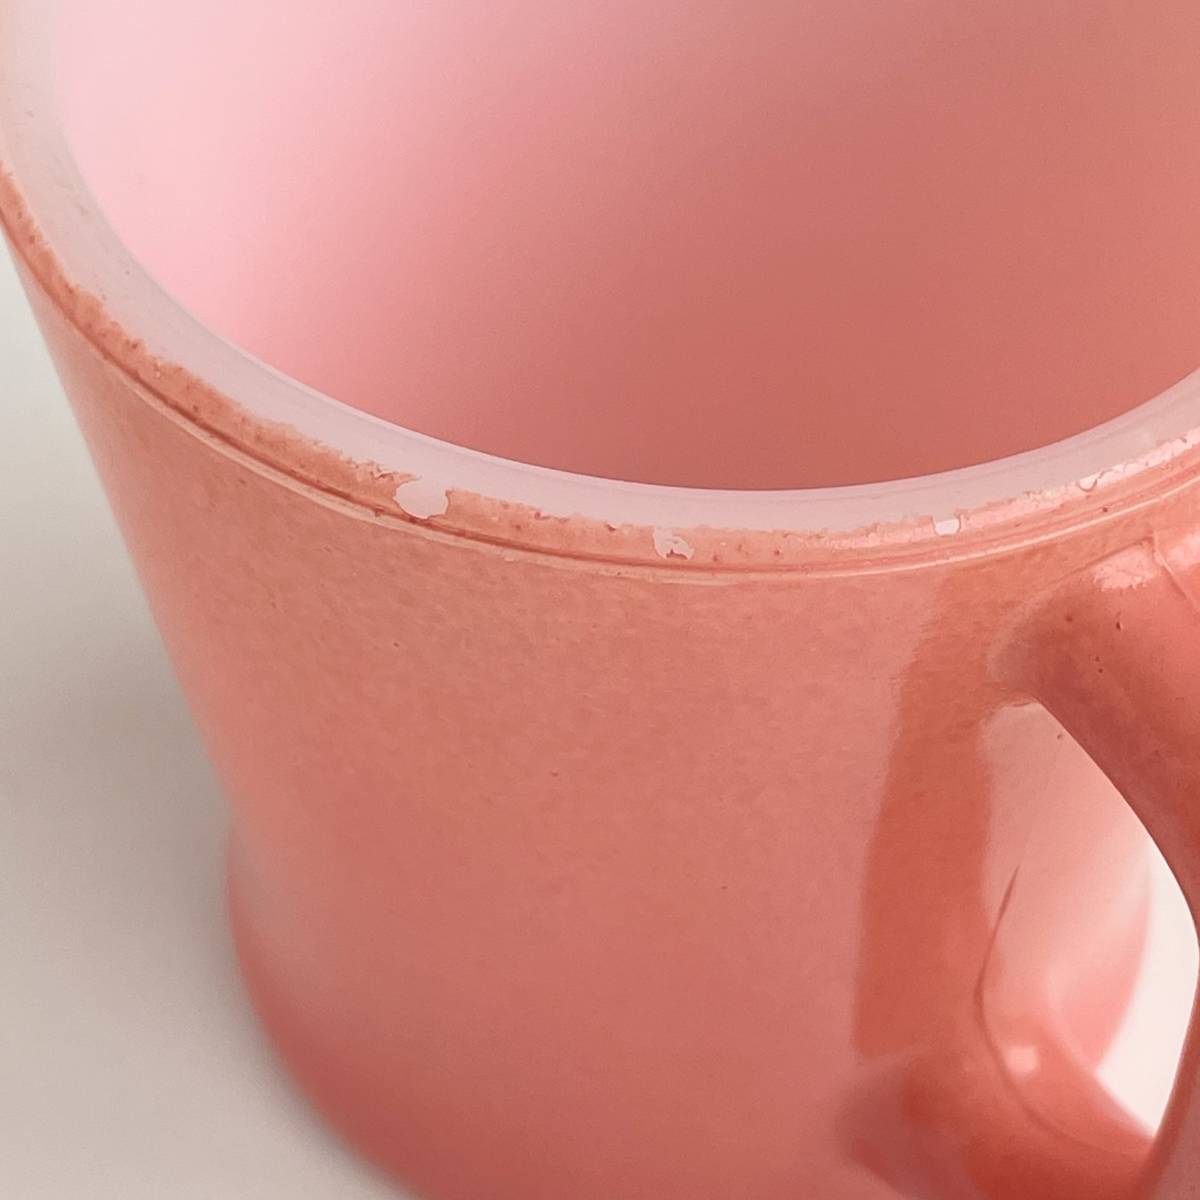 FIRE KING ファイヤーキング 濃いピンク 桜色 マグカップ Dハンドル ヴィンテージ 耐熱 ミルクグラス アメリカ製_画像6